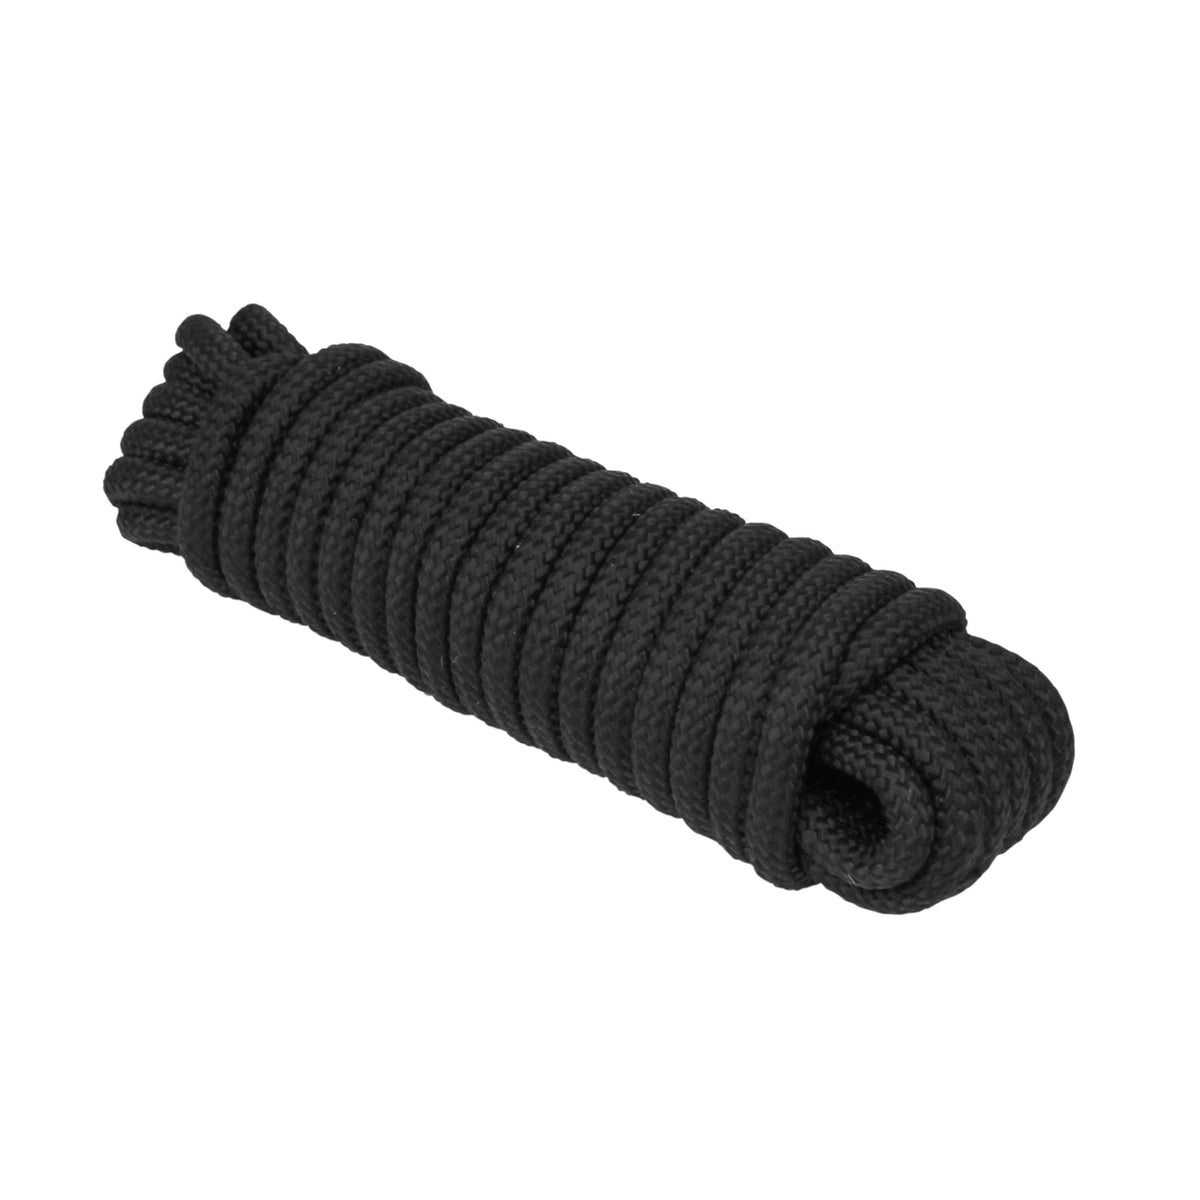 Extreme Max Diamond Braid Utility Rope 1/4" 100' Black #3008.0307